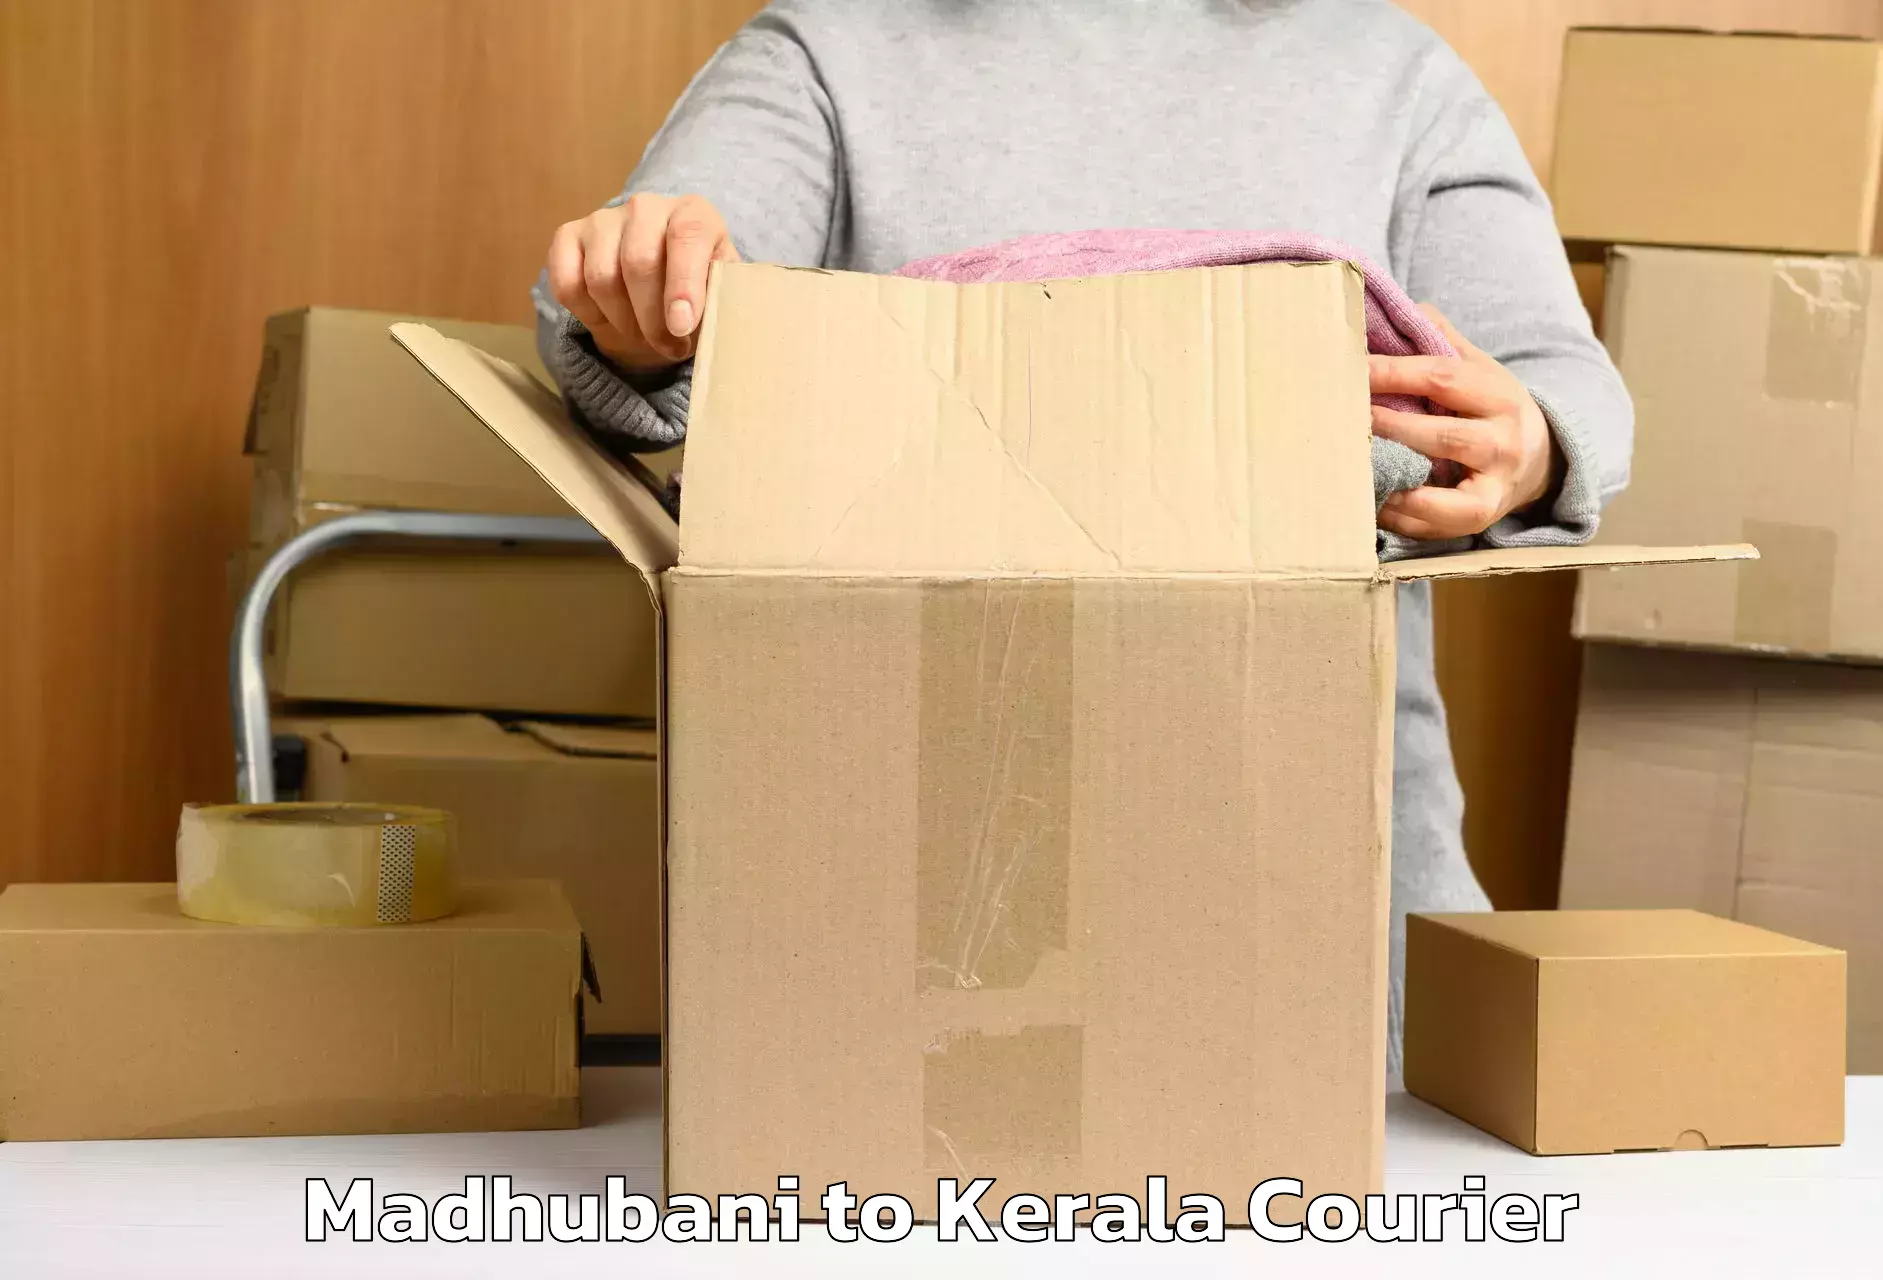 Luggage shipment specialists Madhubani to Kerala